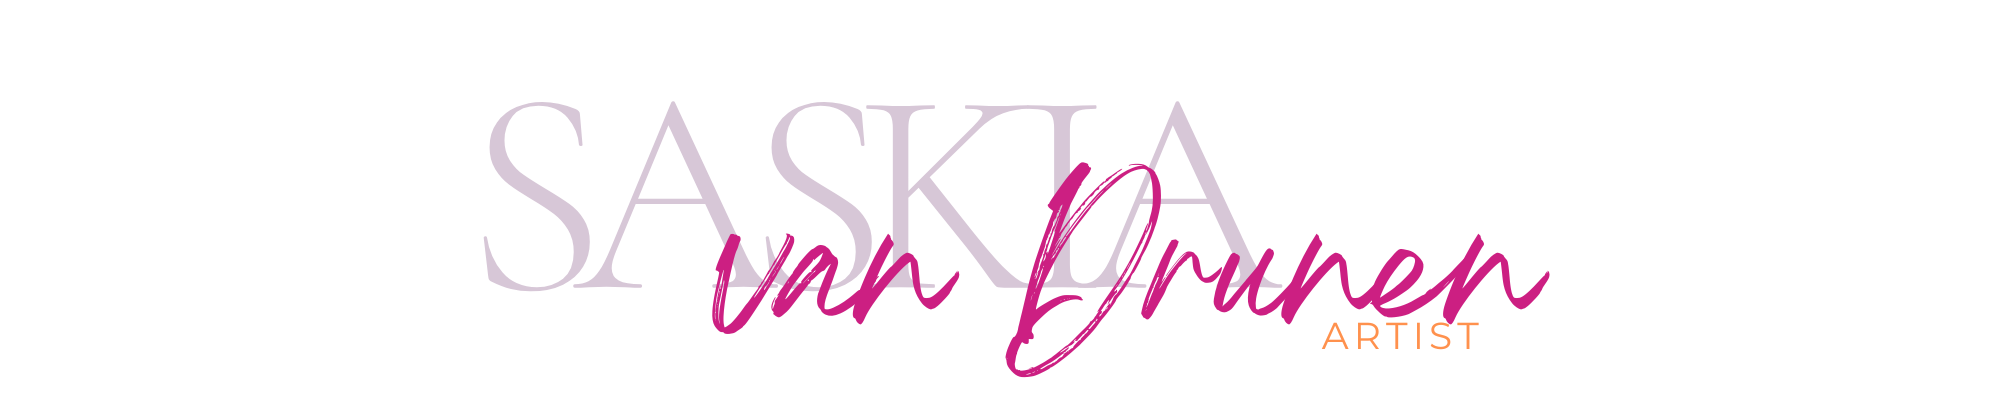 Artist Saskia van Drunen logo